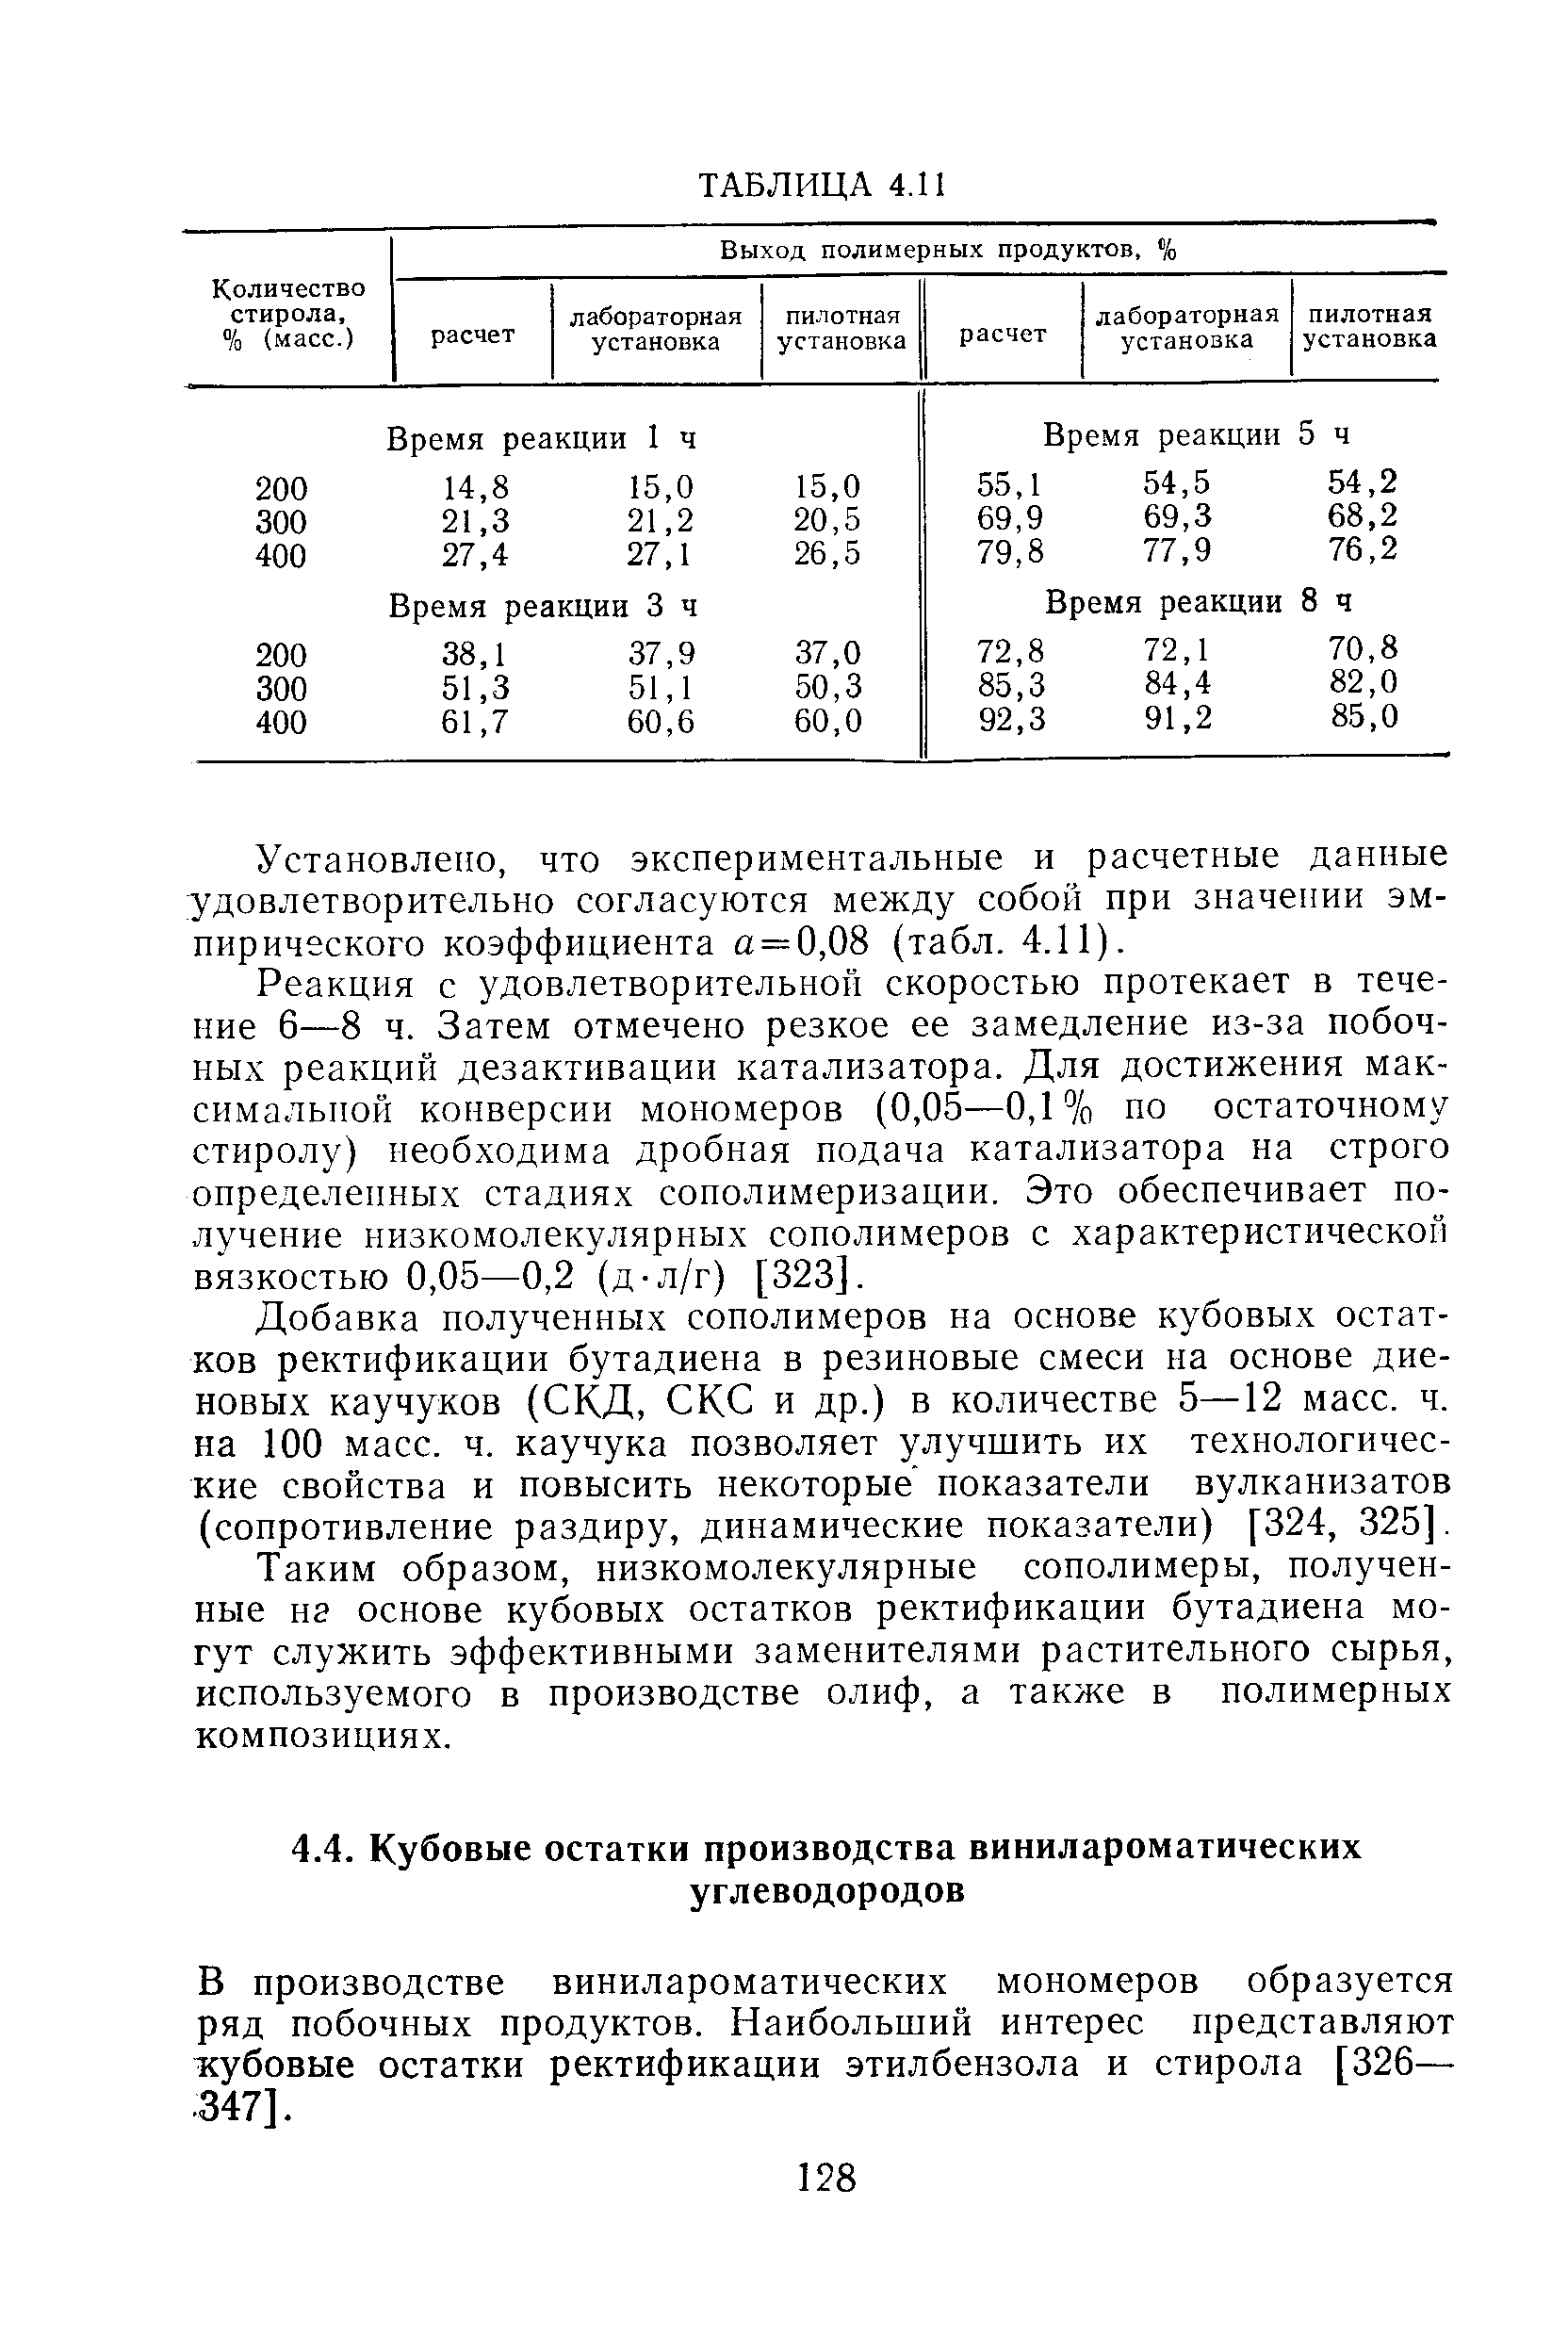 В производстве винилароматических мономеров образуется ряд побочных продуктов. Наибольший интерес представляют жубовые остатки ректификации этилбензола и стирола [326— 347].